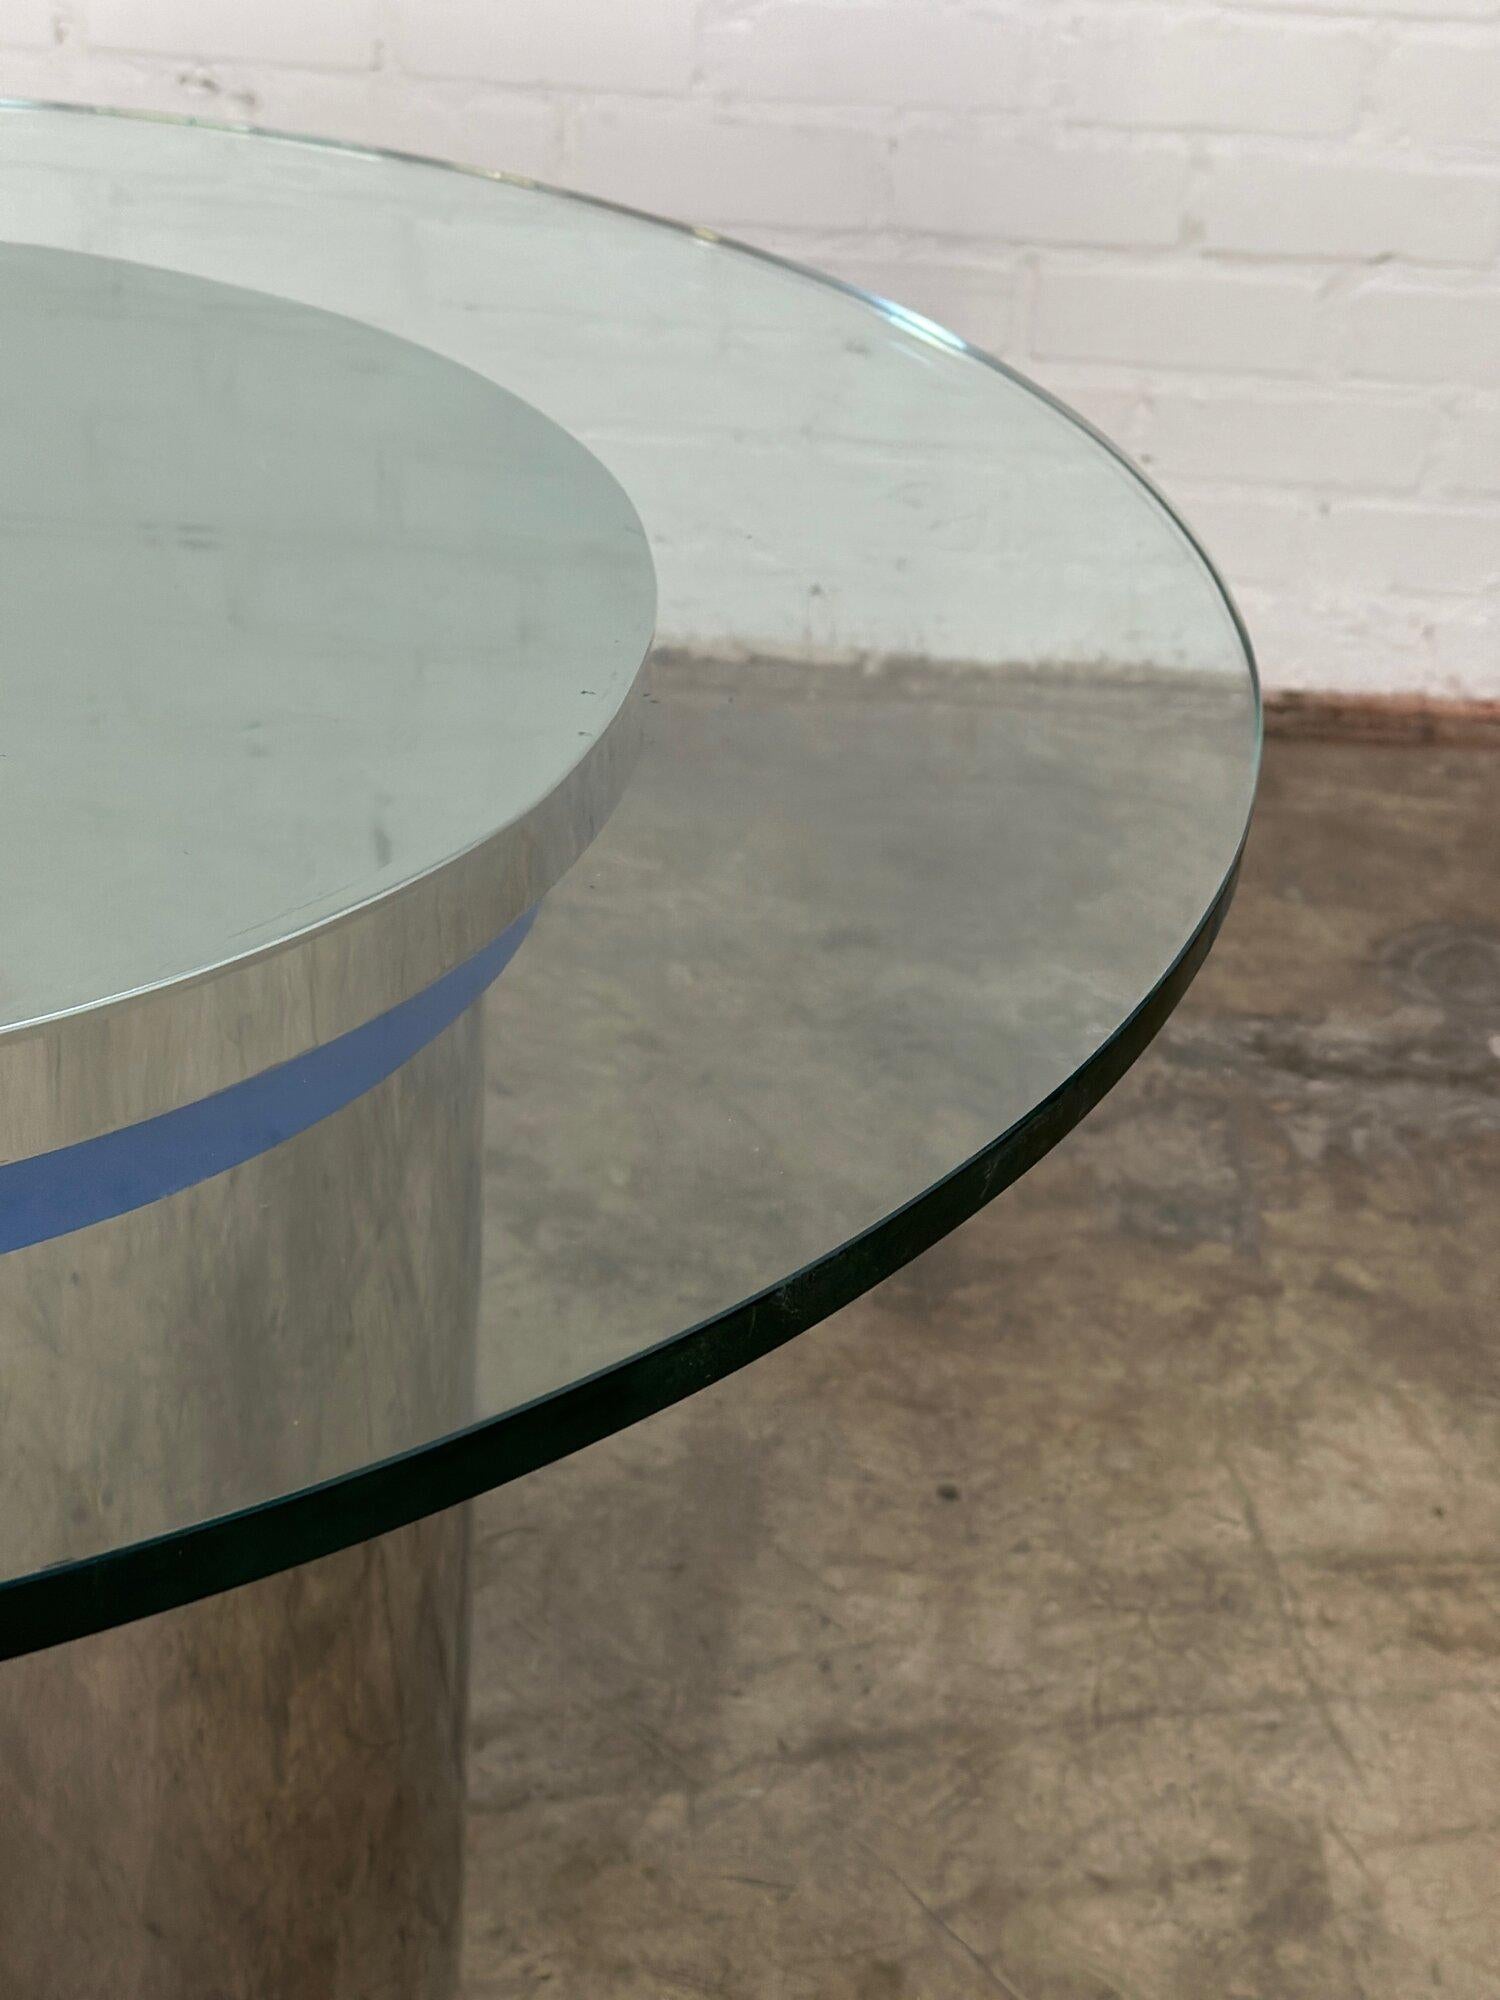 L42 P42 H30.5

Table de salle à manger VIntage chromée avec un bord chromé bleu. La base chromée et le verre sont en bon état et ne présentent pas de zones d'usure majeures, ni d'éclats dans le verre ou d'écaillage dans le chrome. De légères